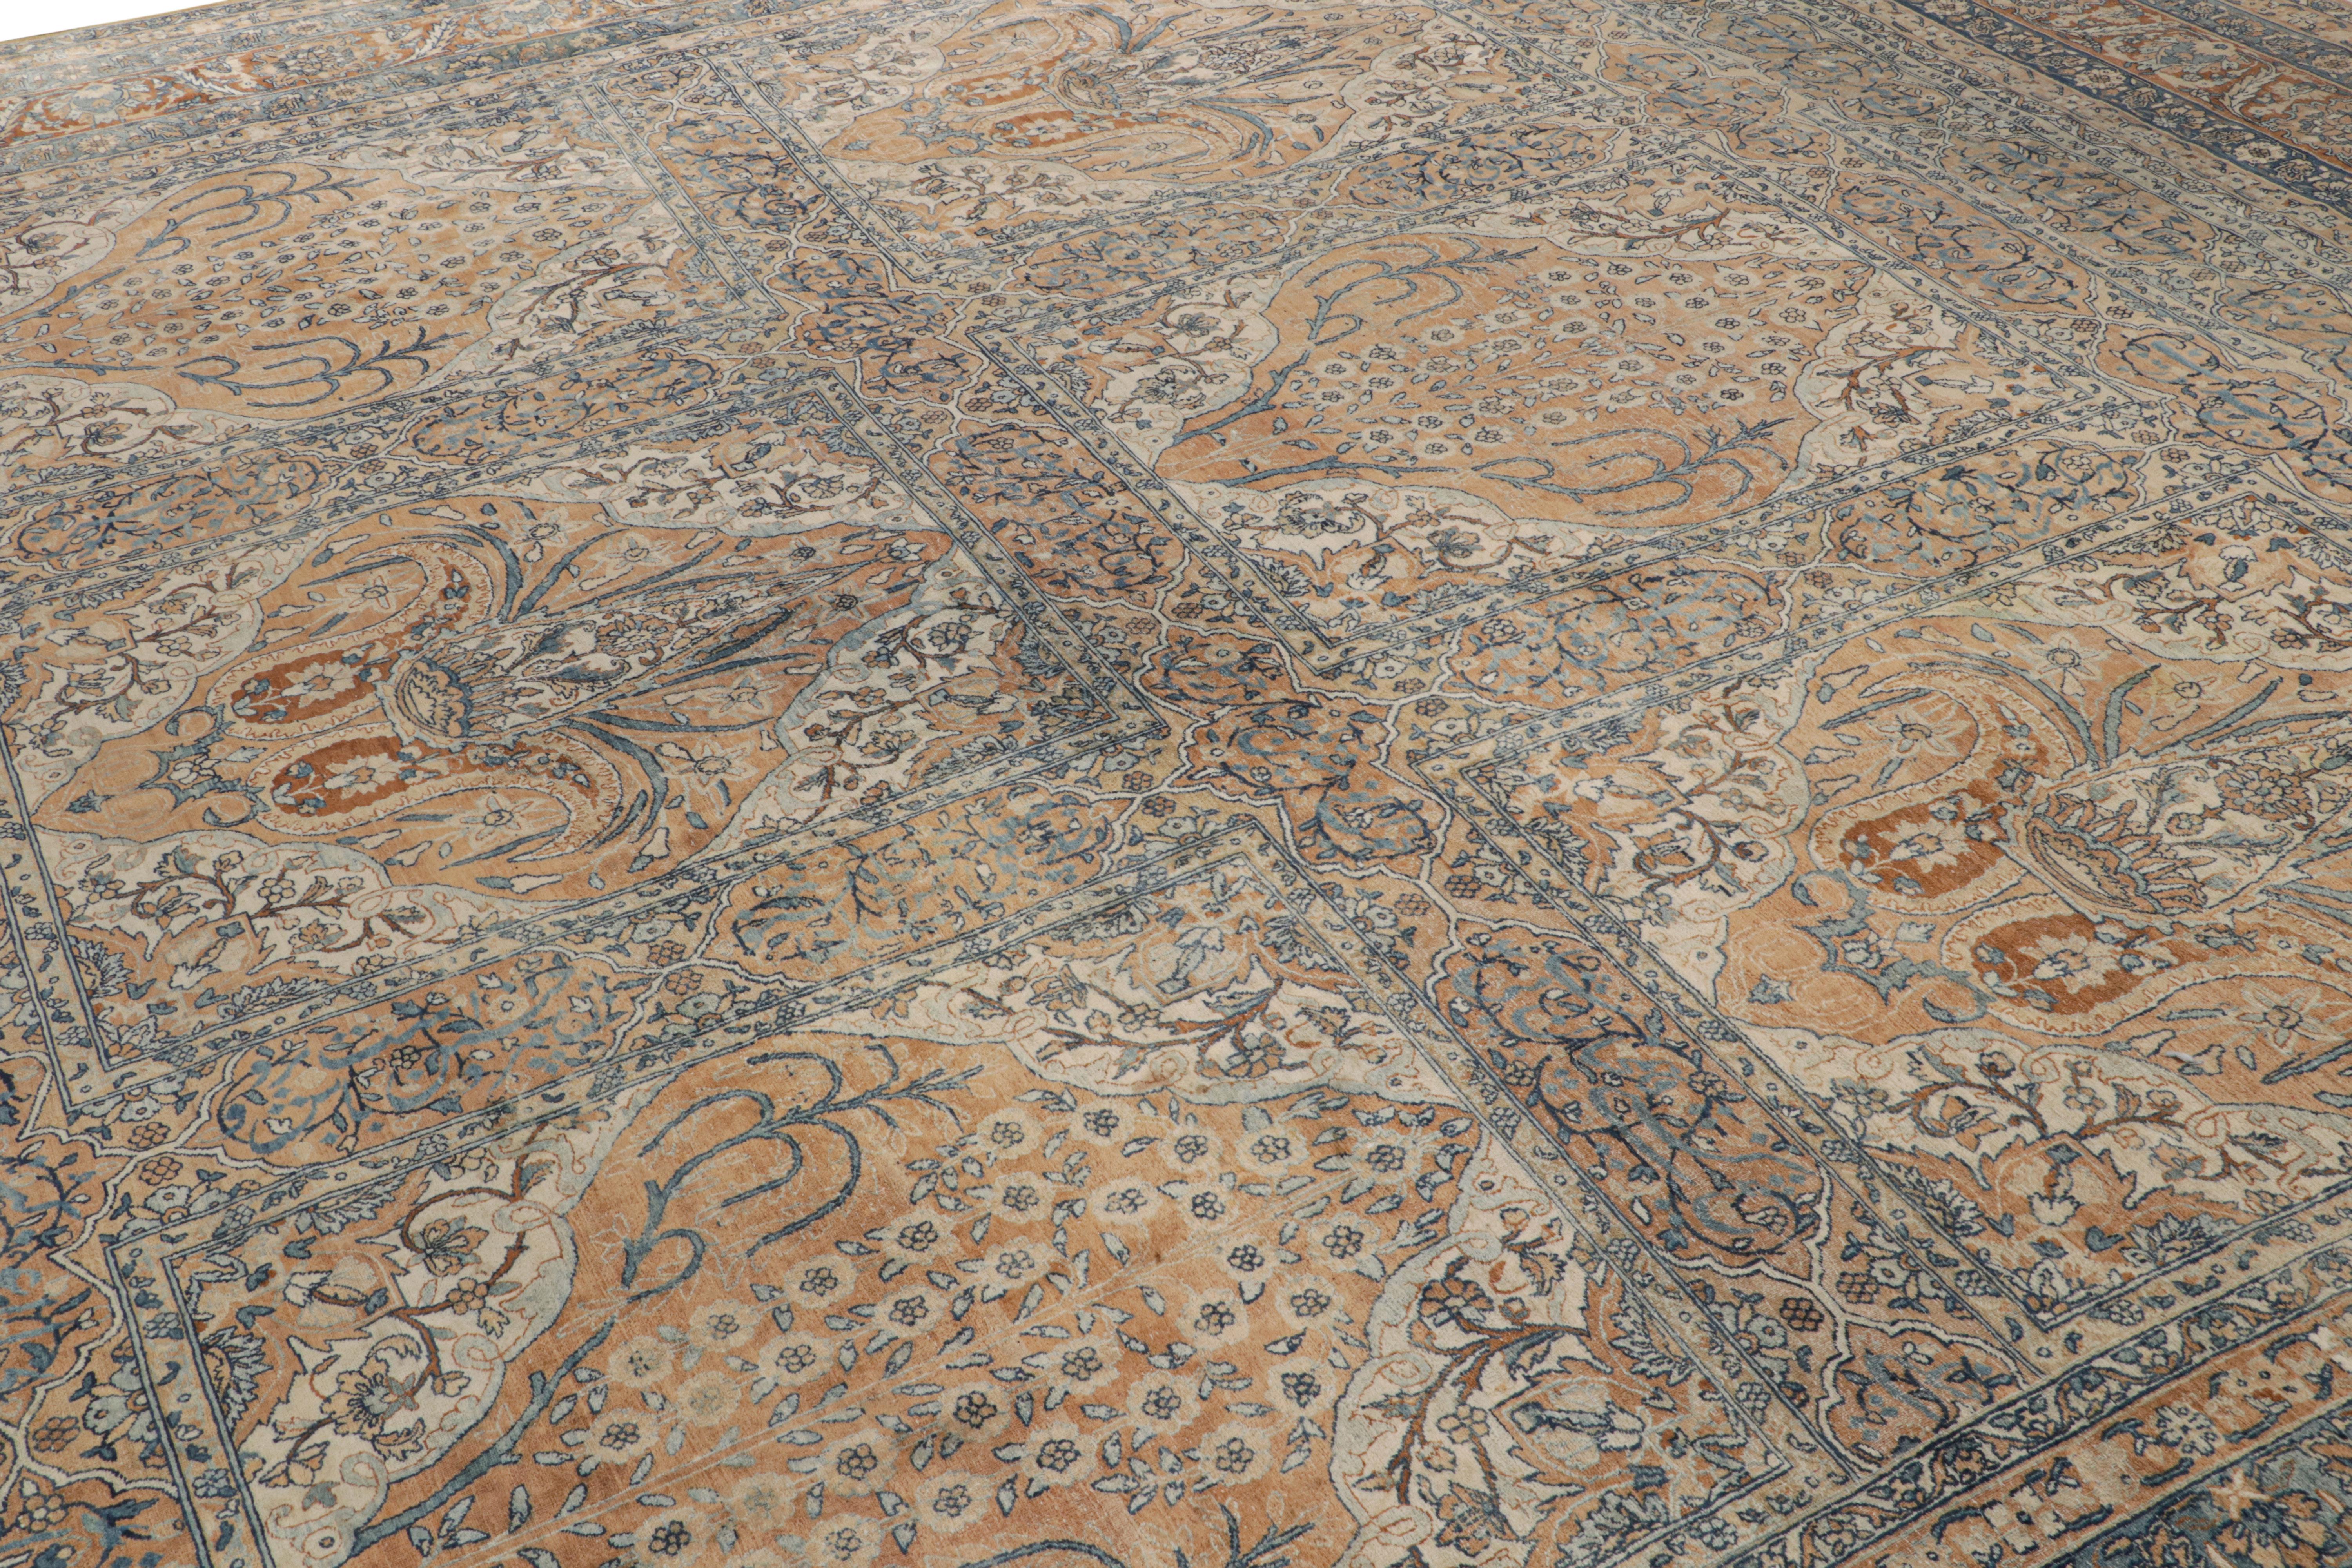 Dieser quadratische Teppich im Format 14x14 wurde um 1920-1930 in Wolle handgeknüpft und ist ein ganz besonderer antiker Perserteppich mit Herkunft aus Kerman.

Über das Design:

Der Teppich besticht durch Gold- und Blautöne, die das florale Muster